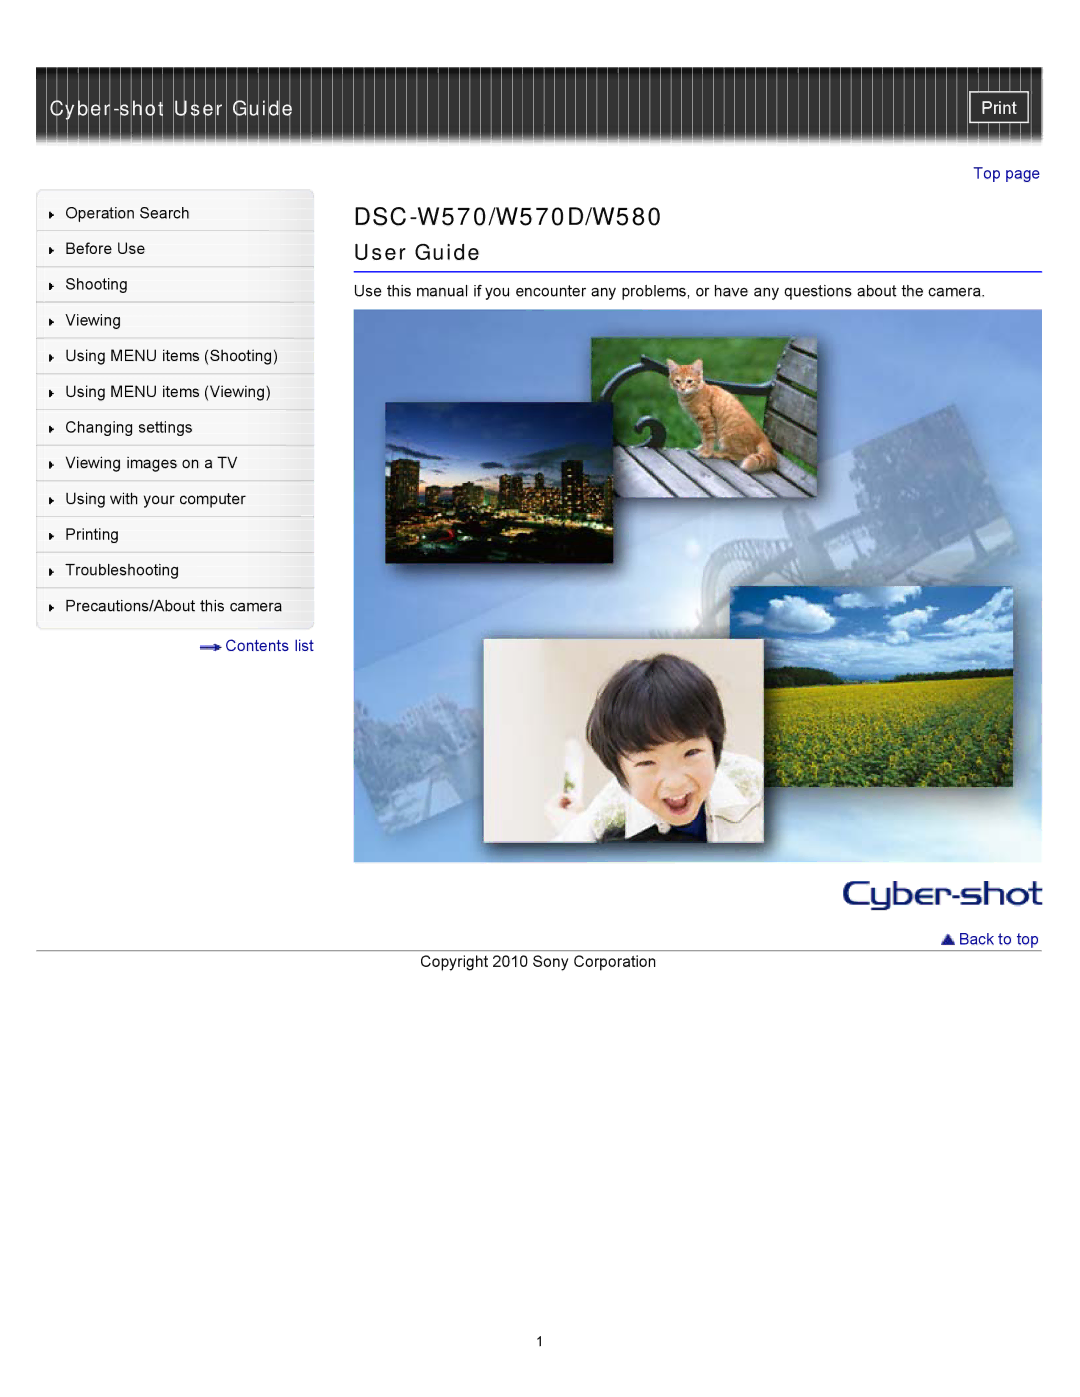 Sony DSC-W580, DSC-W570D manual DSC-W570/W570D/W580 